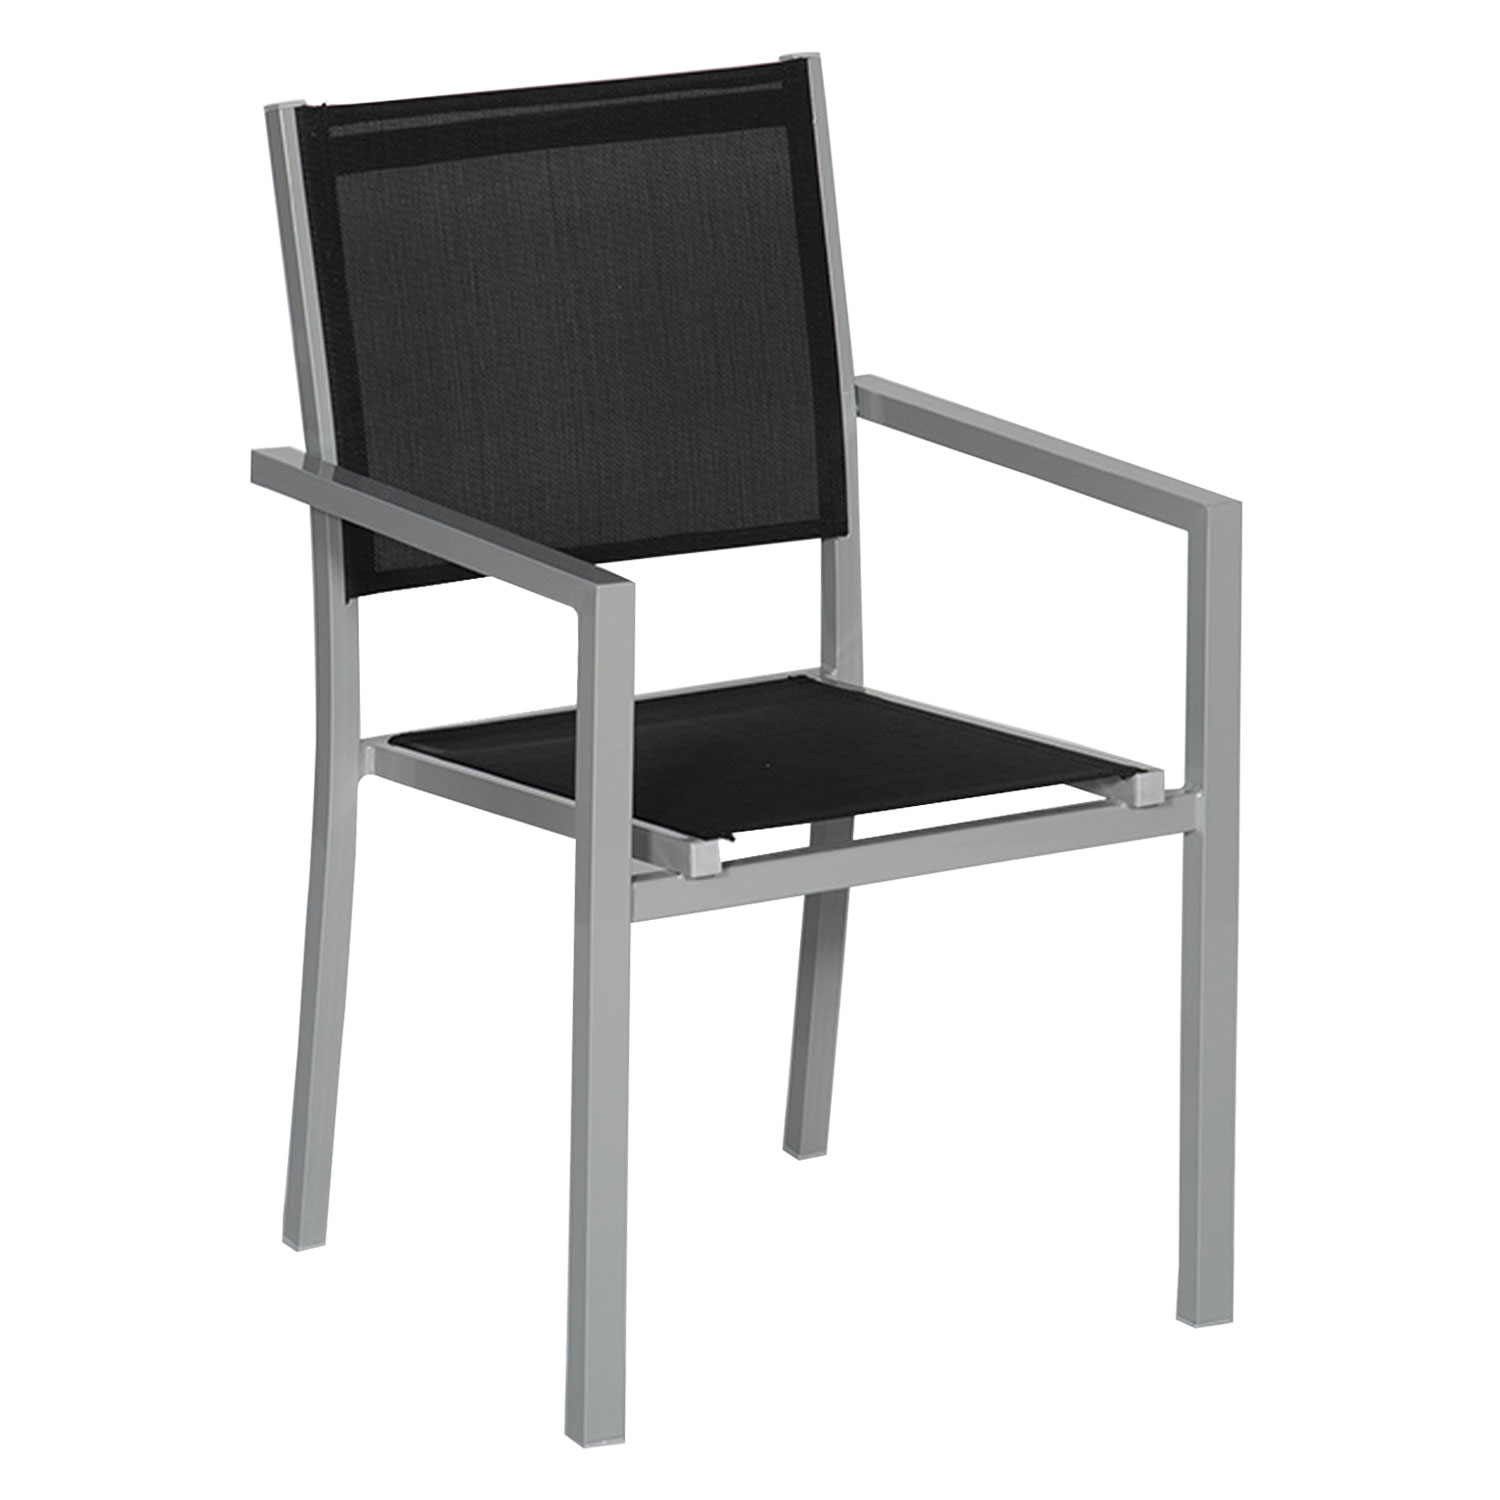 Lot de 10 chaises en aluminium gris - textilène noir